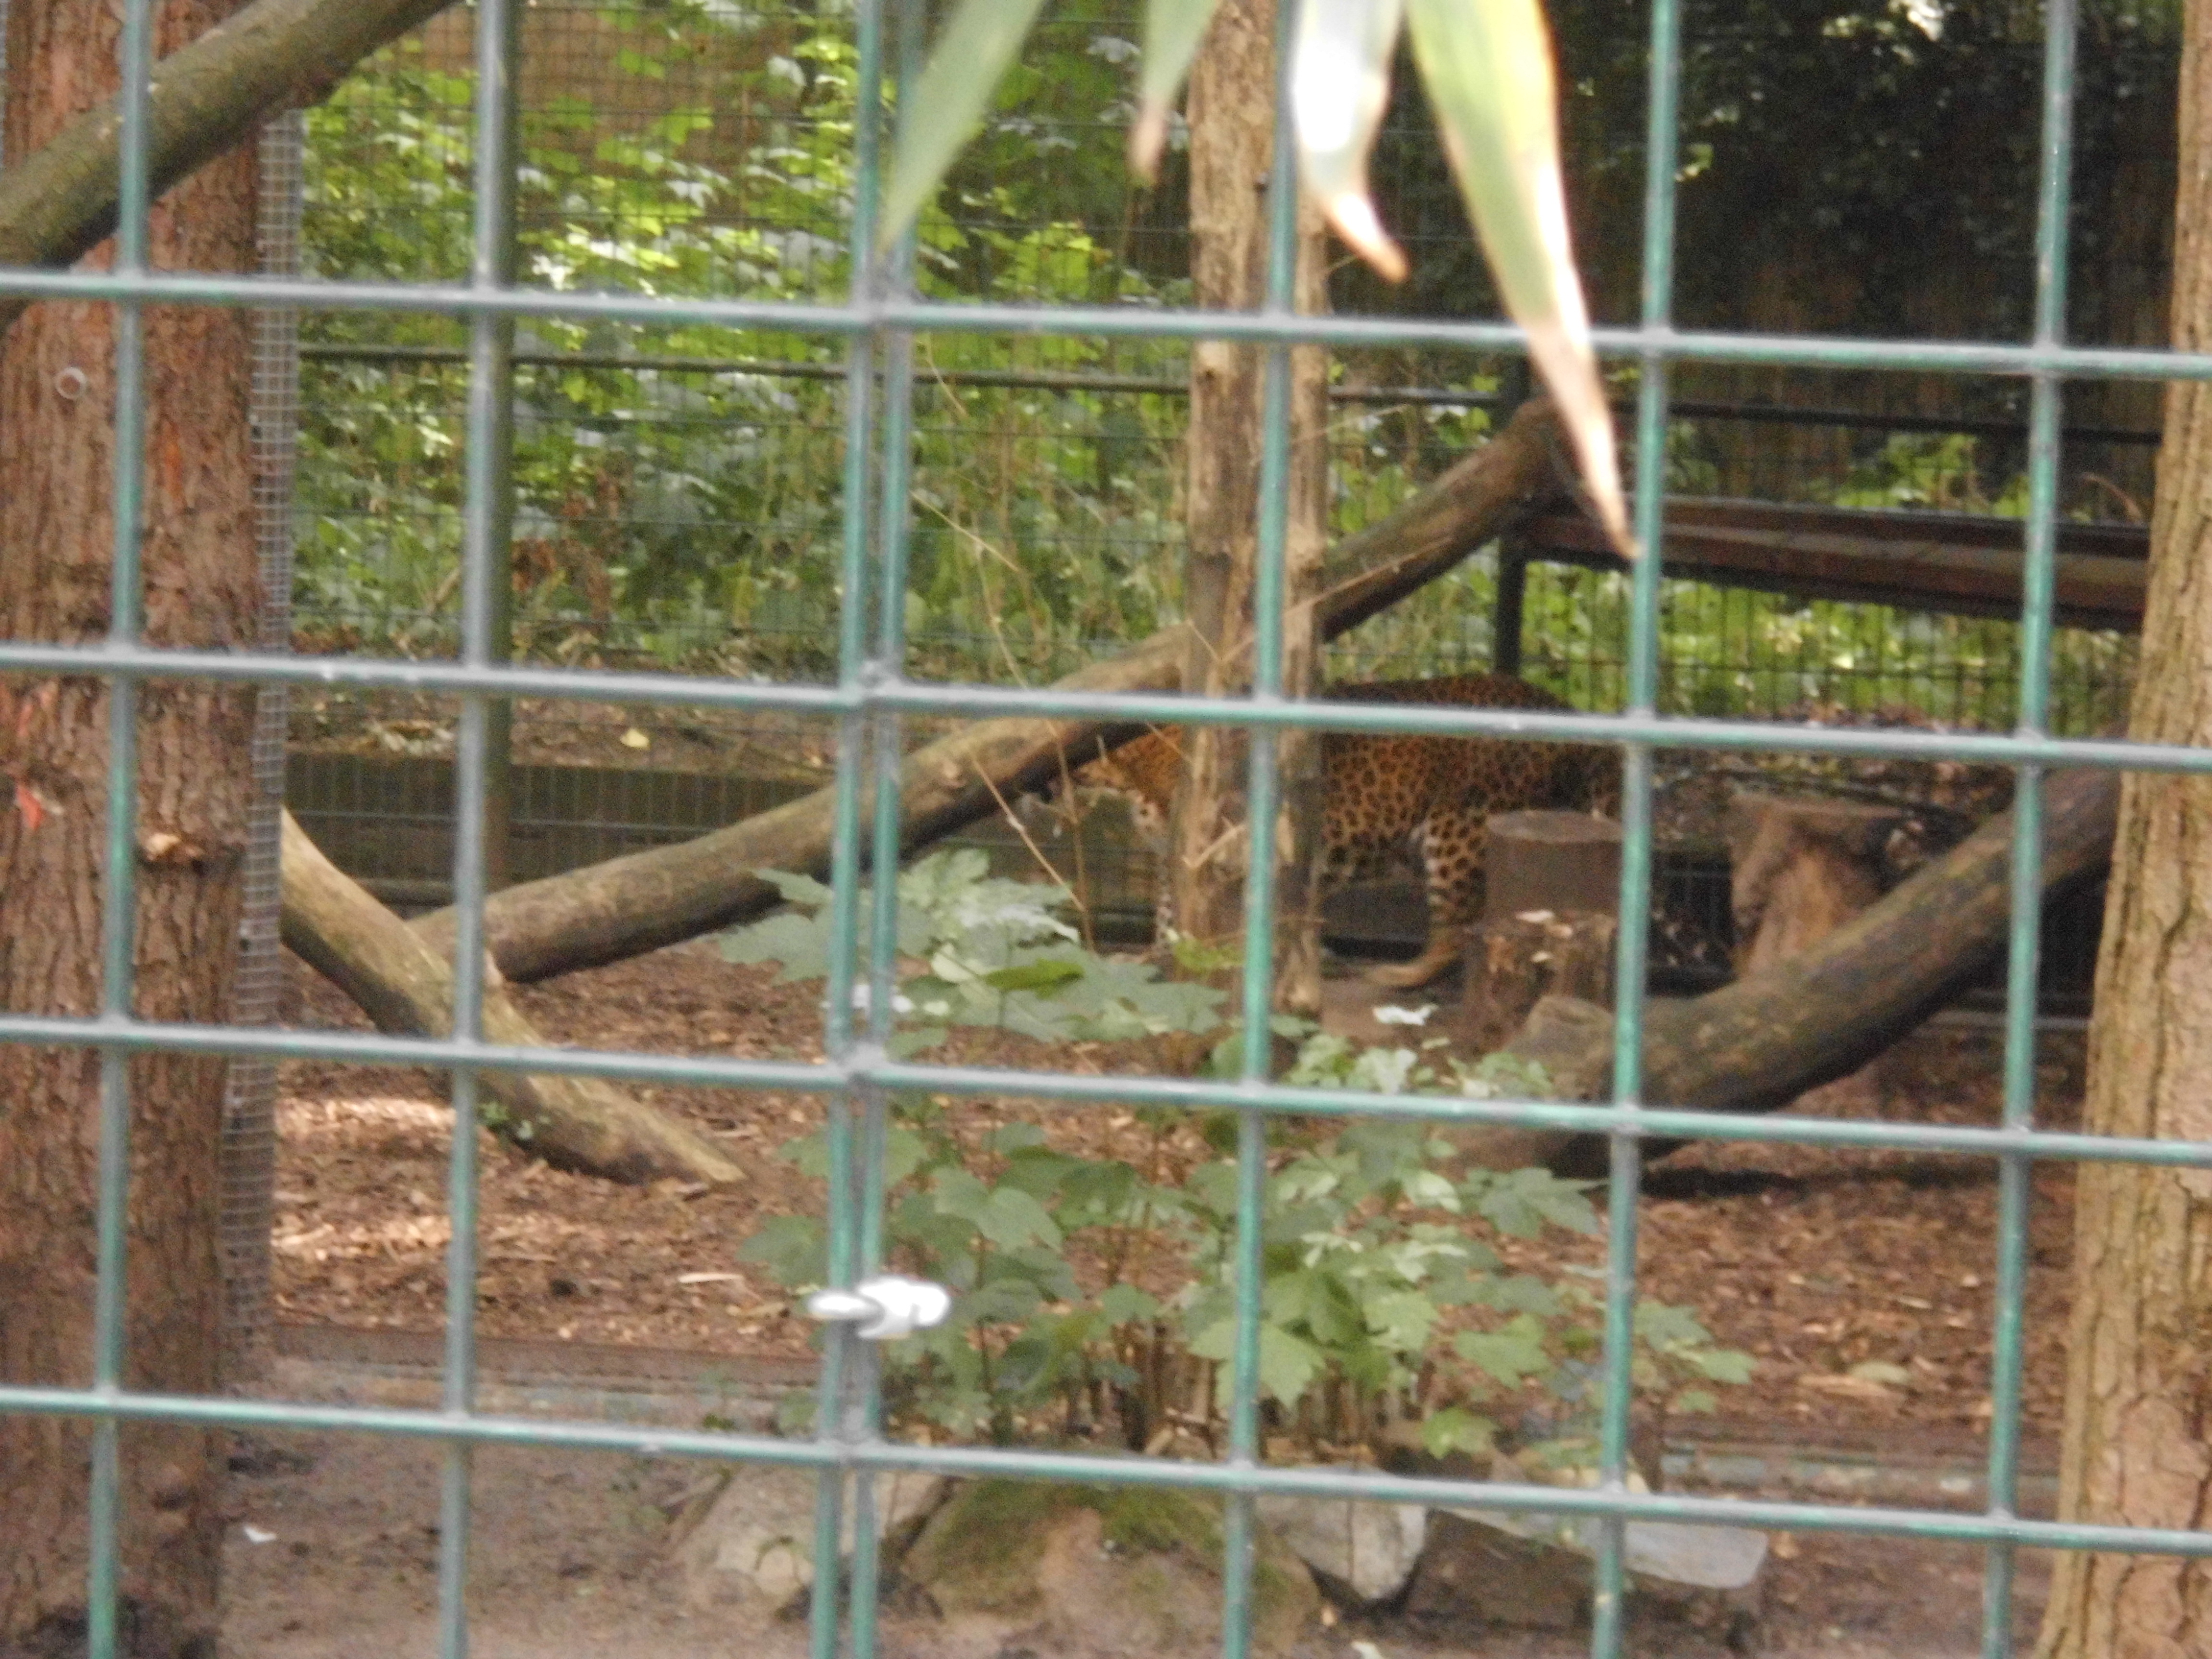 Ceylon-Leopard, leider hat er sich im hinteren Teil versteckt